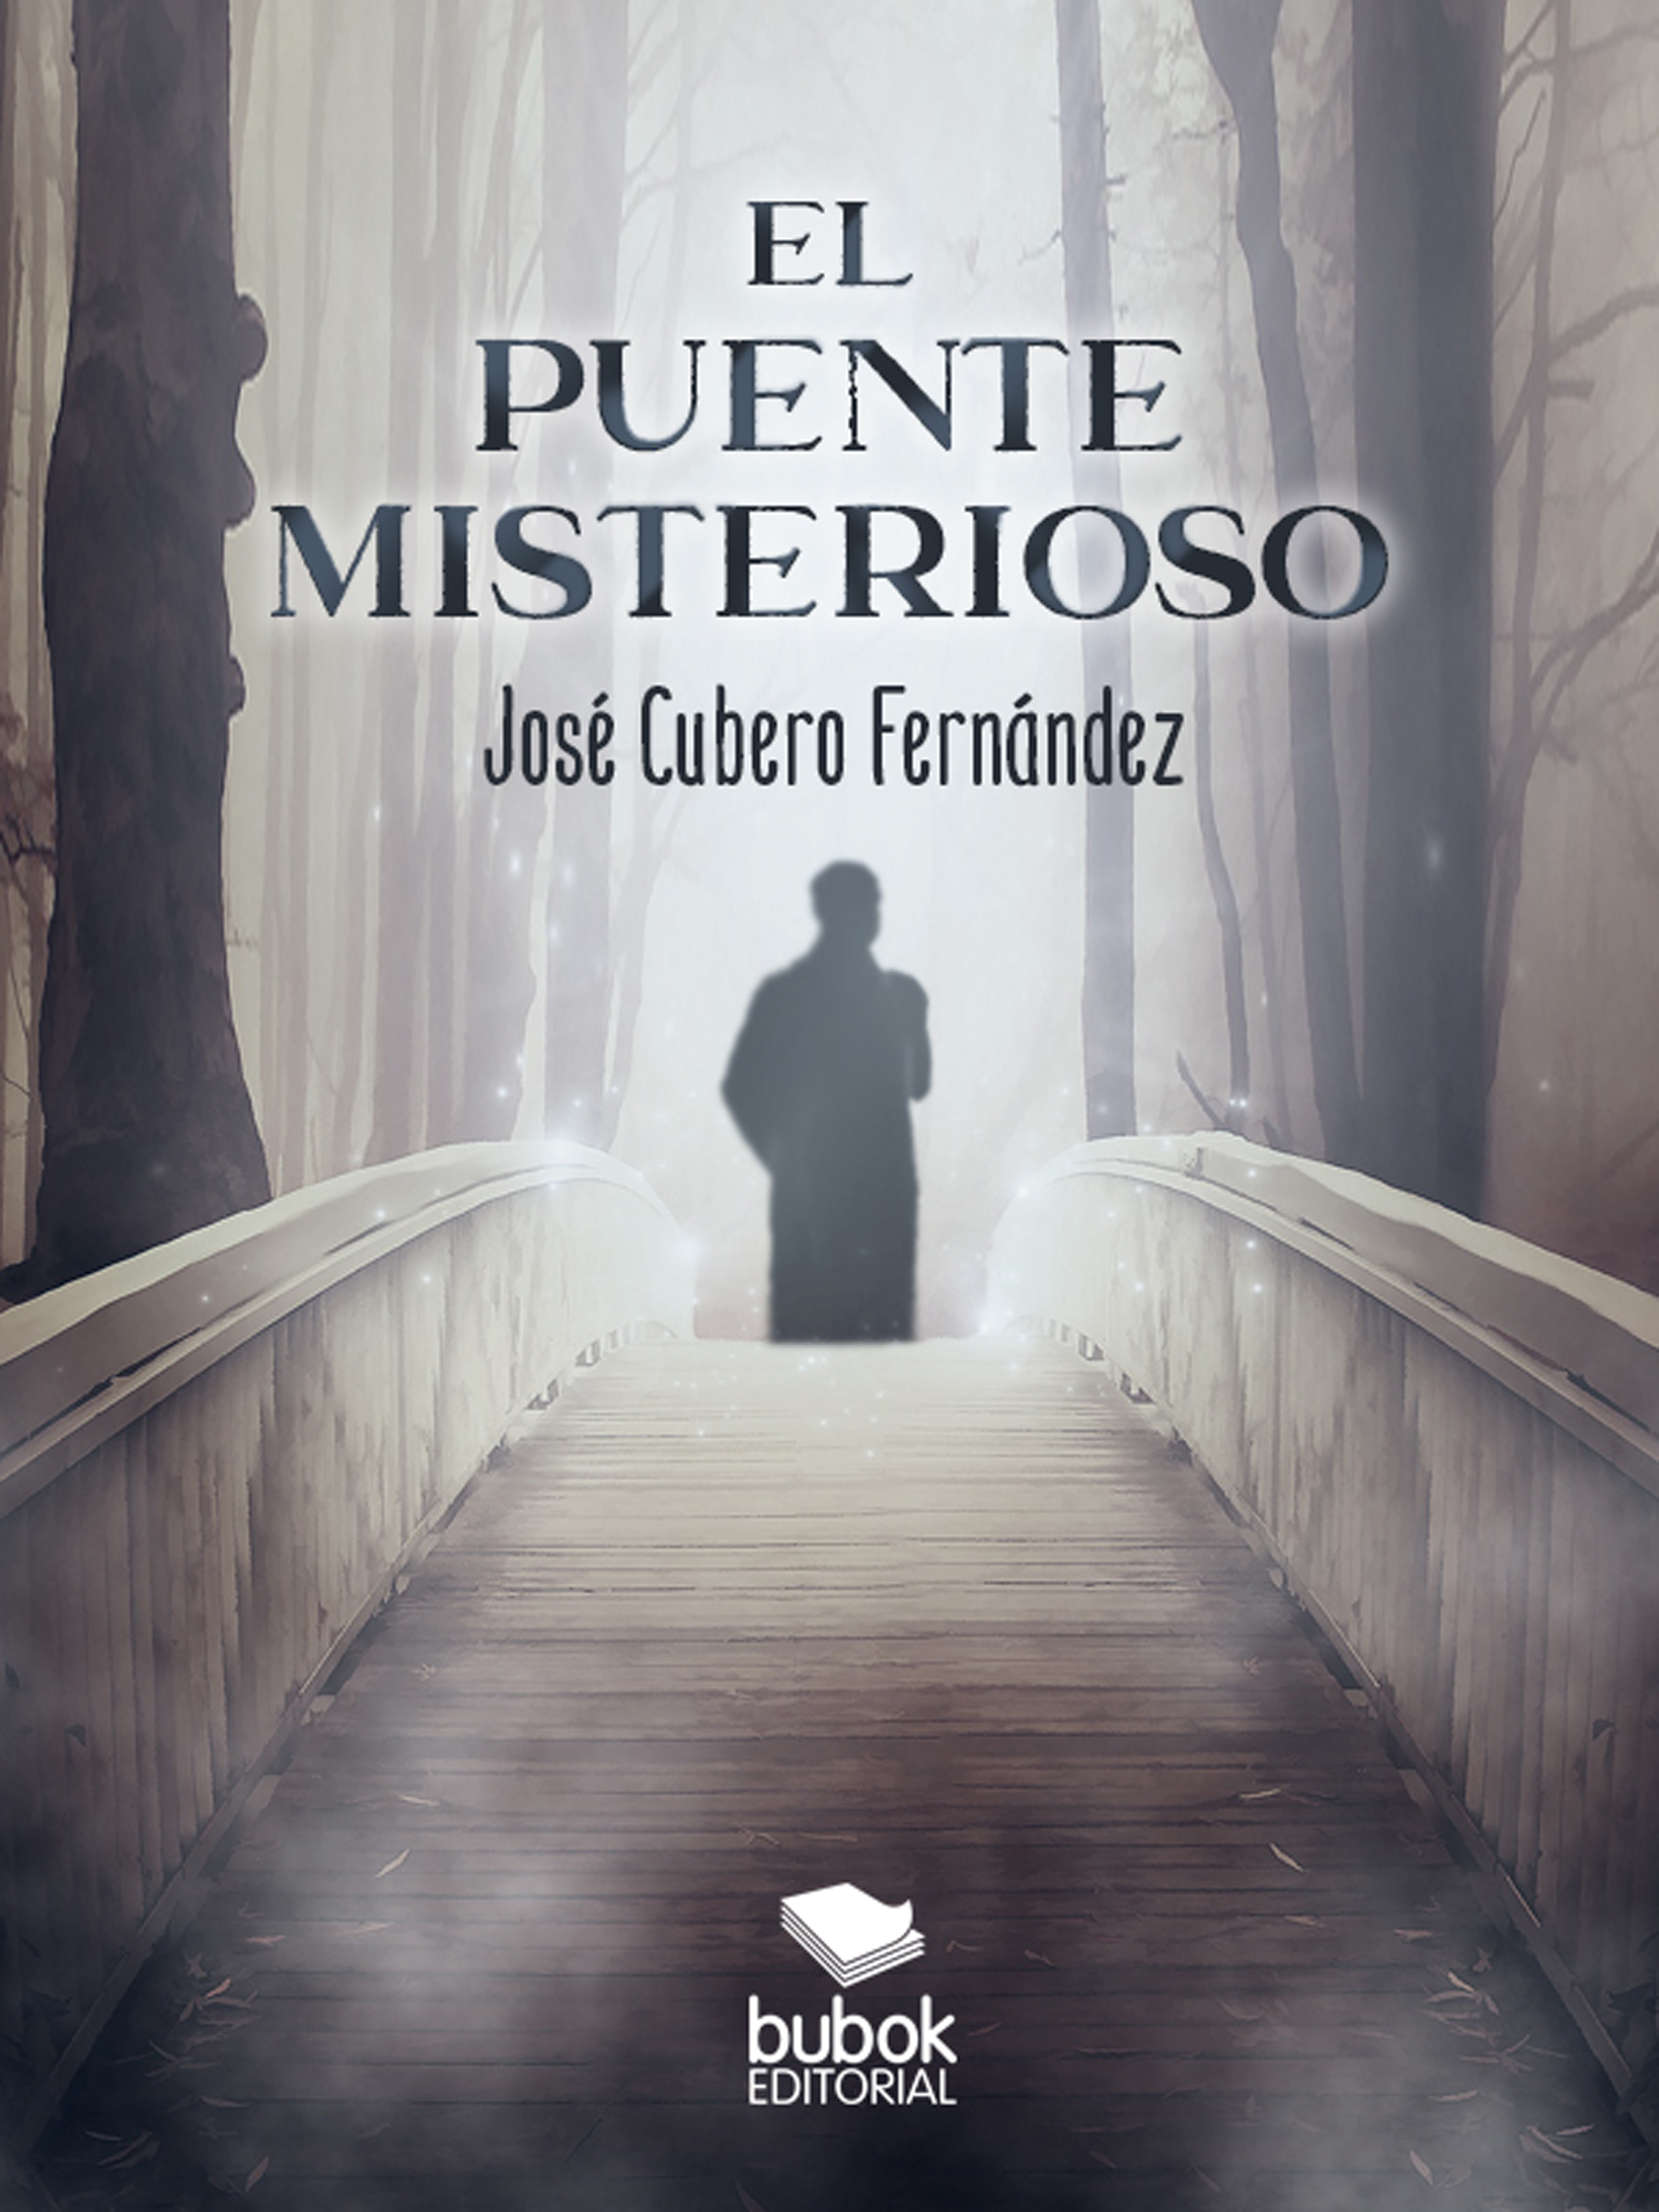 José Cubero Fernández El puente misterioso